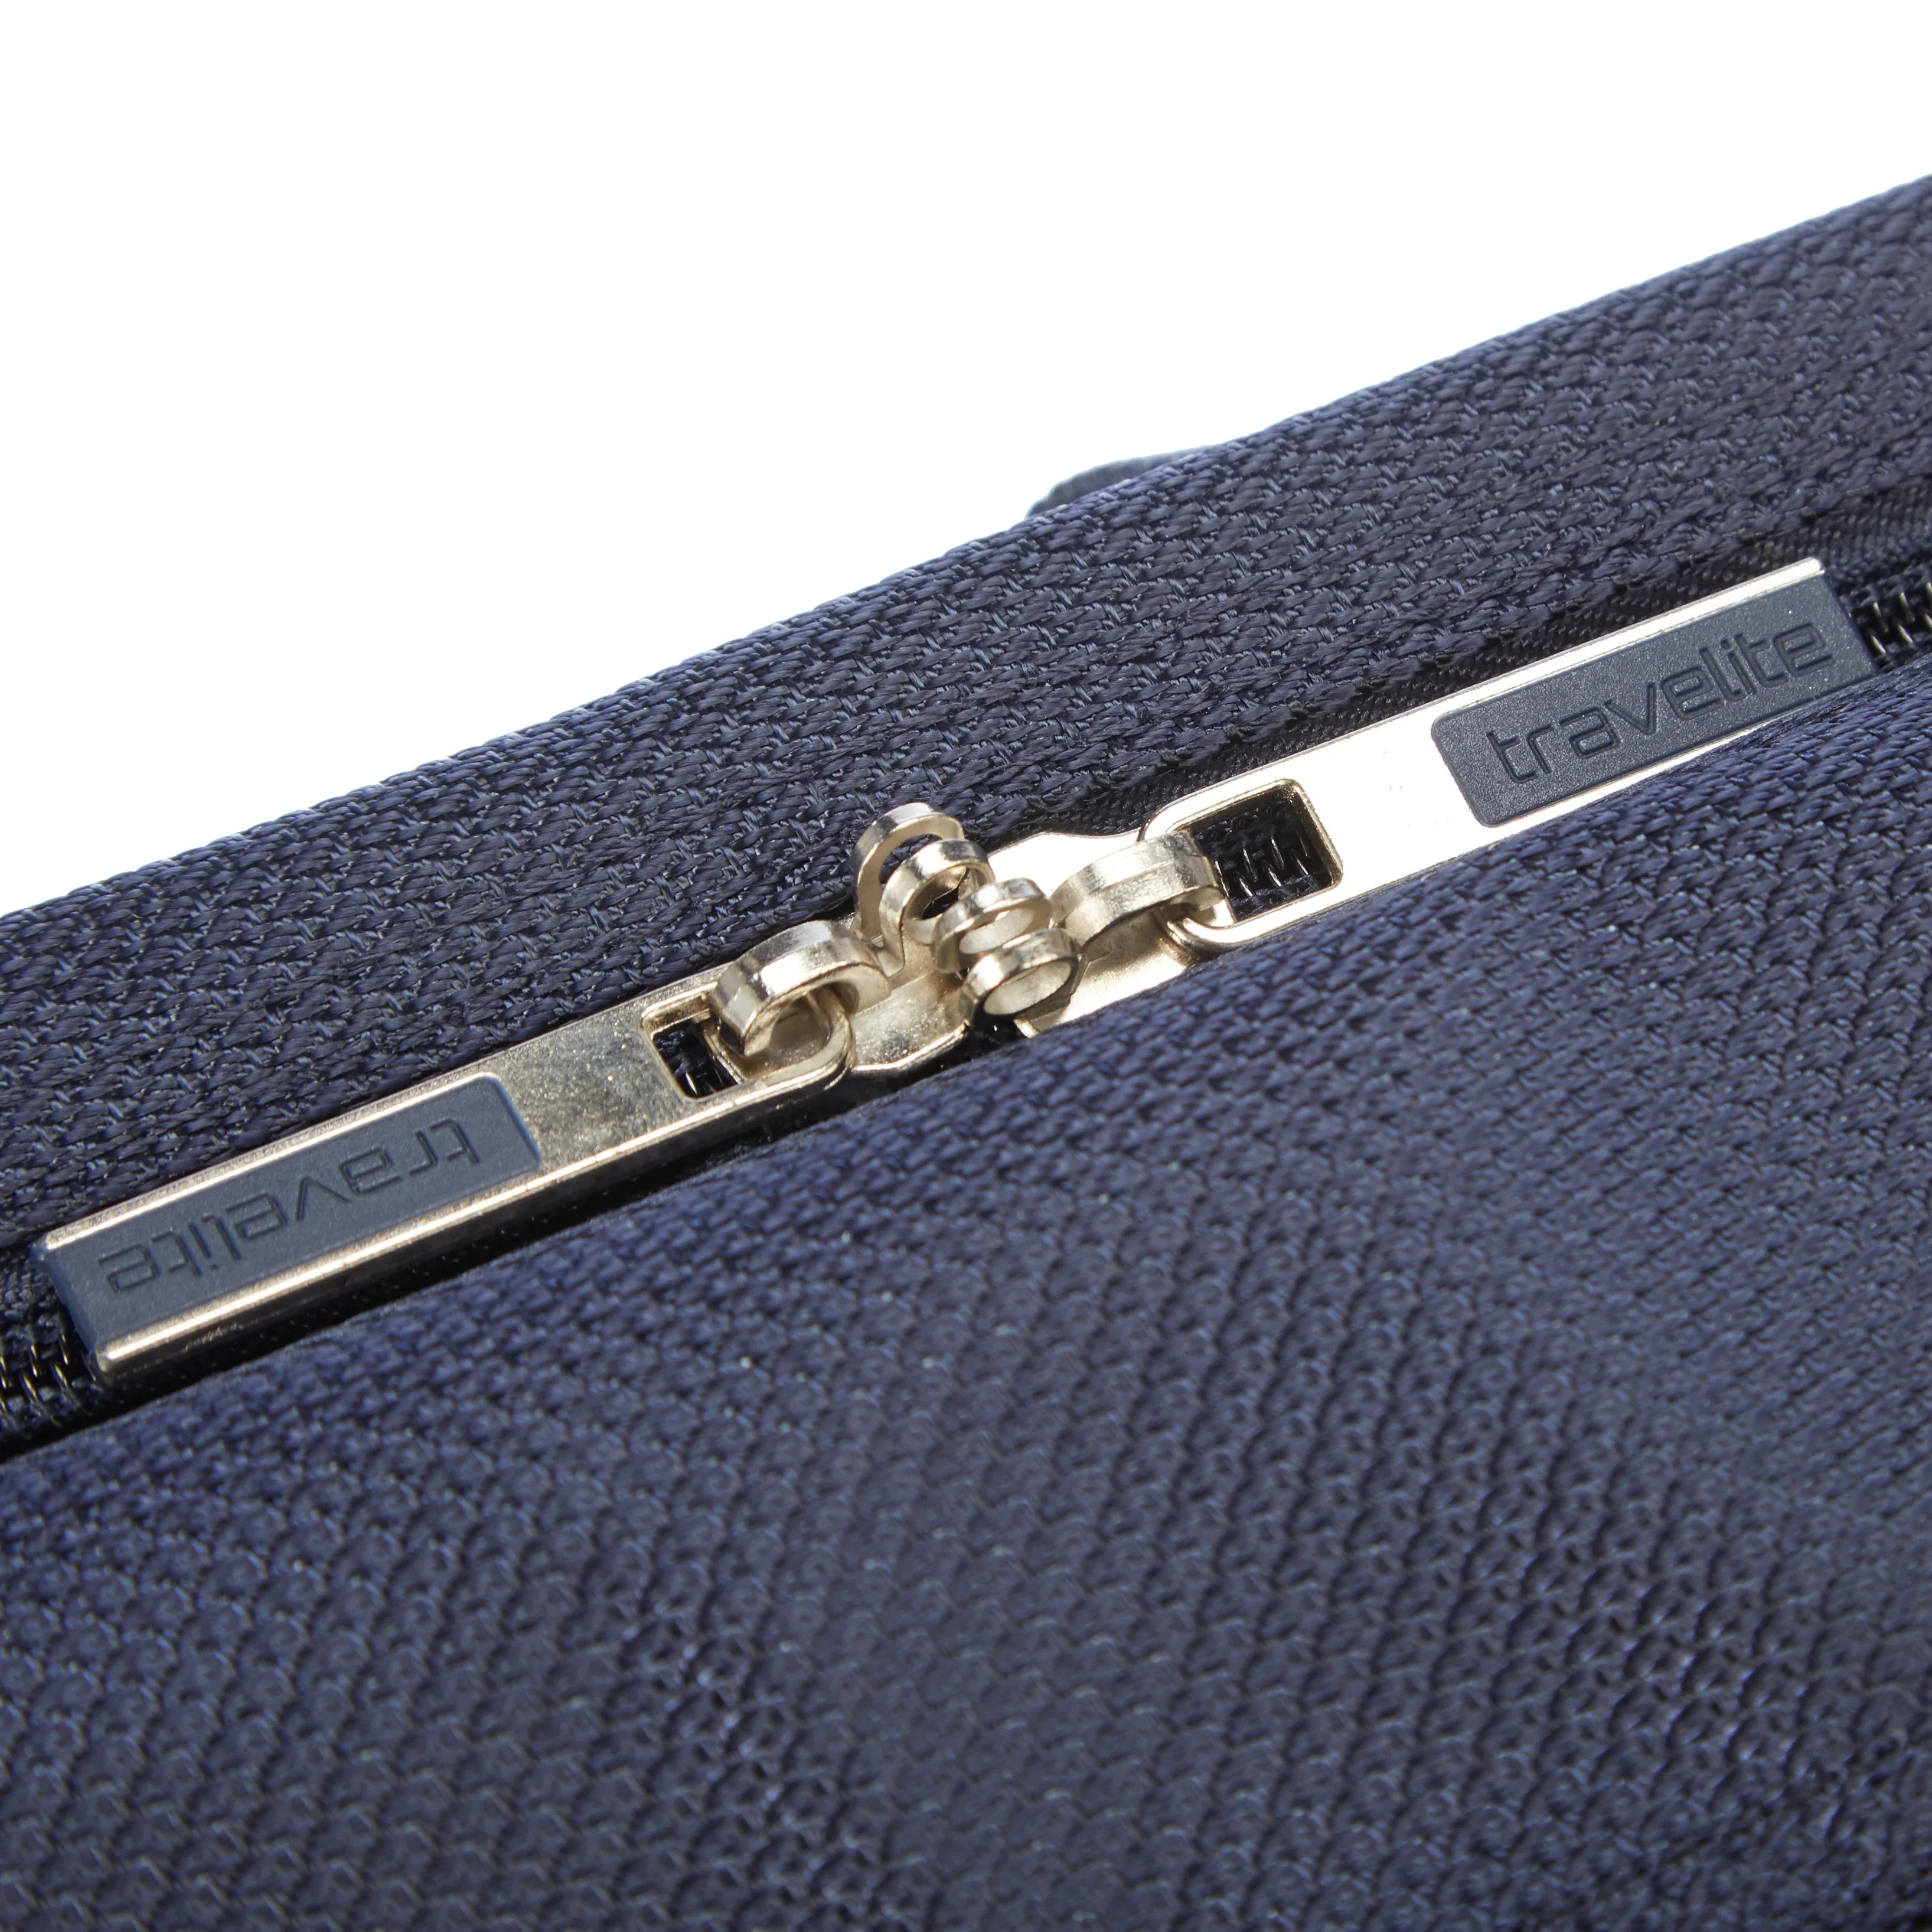 Travelite Miigo boarding bag 40 cm - Matcha